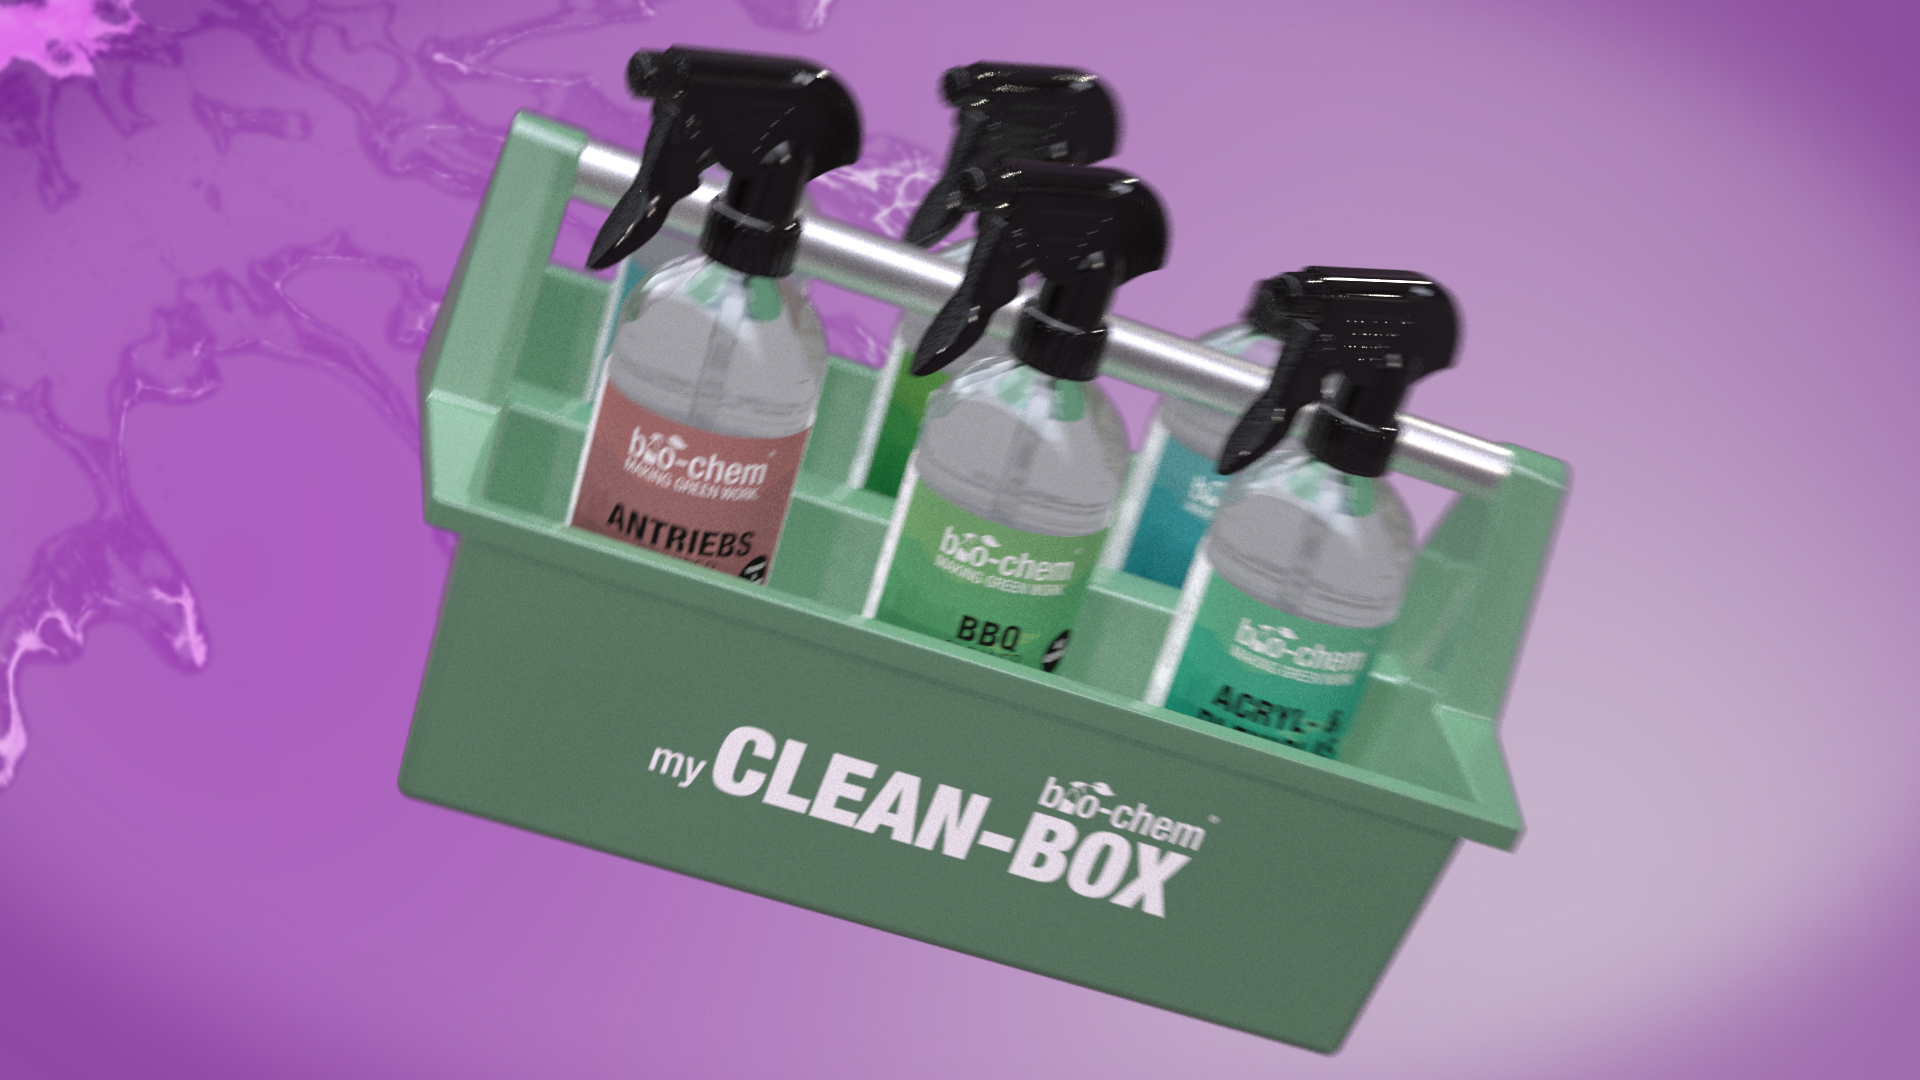 CLEAN-BOX